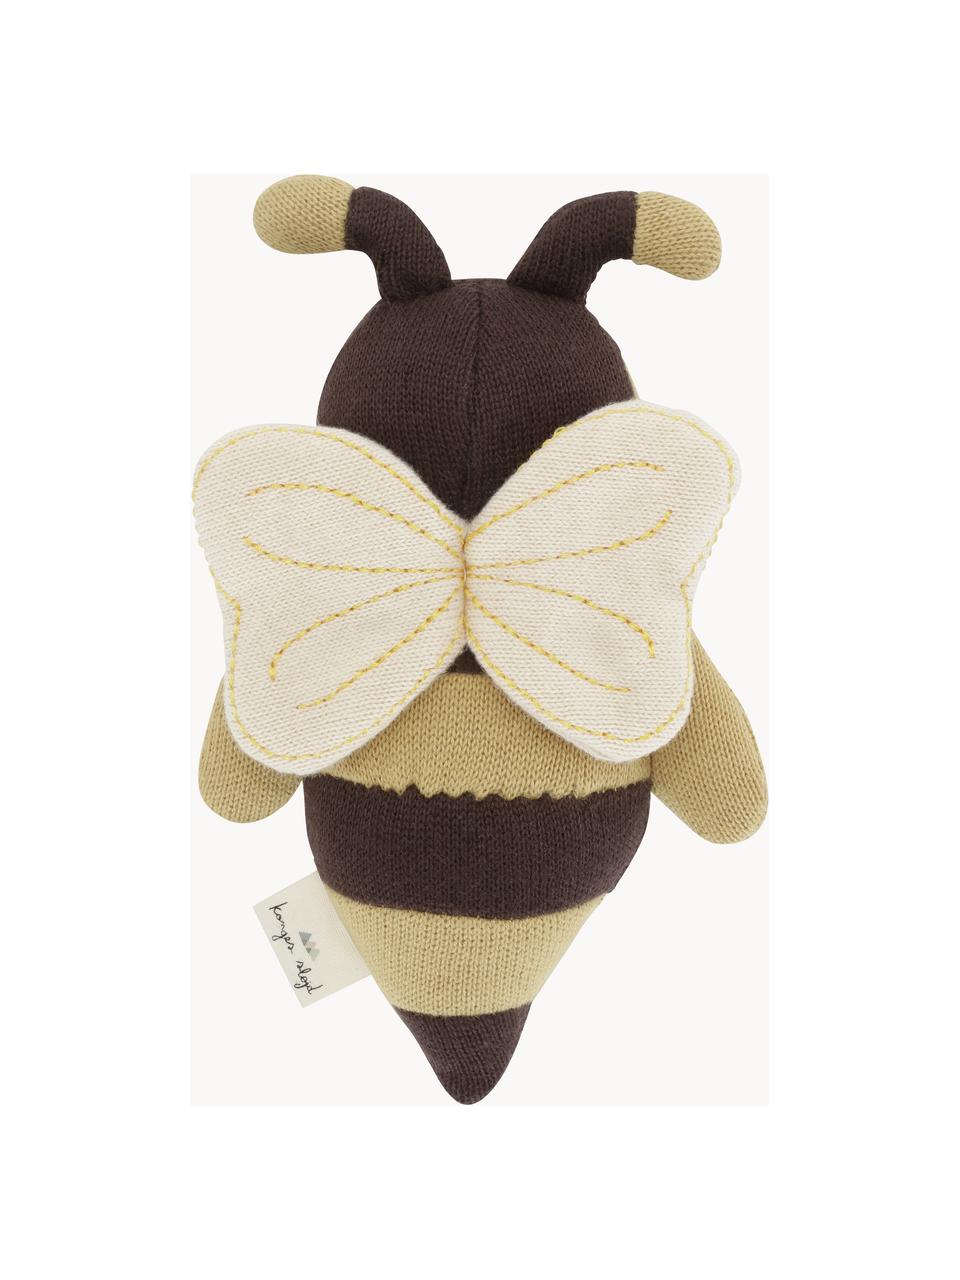 Przytulanka z bawełny Bee, Ochrowy, ciemny brązowy, D 15 cm